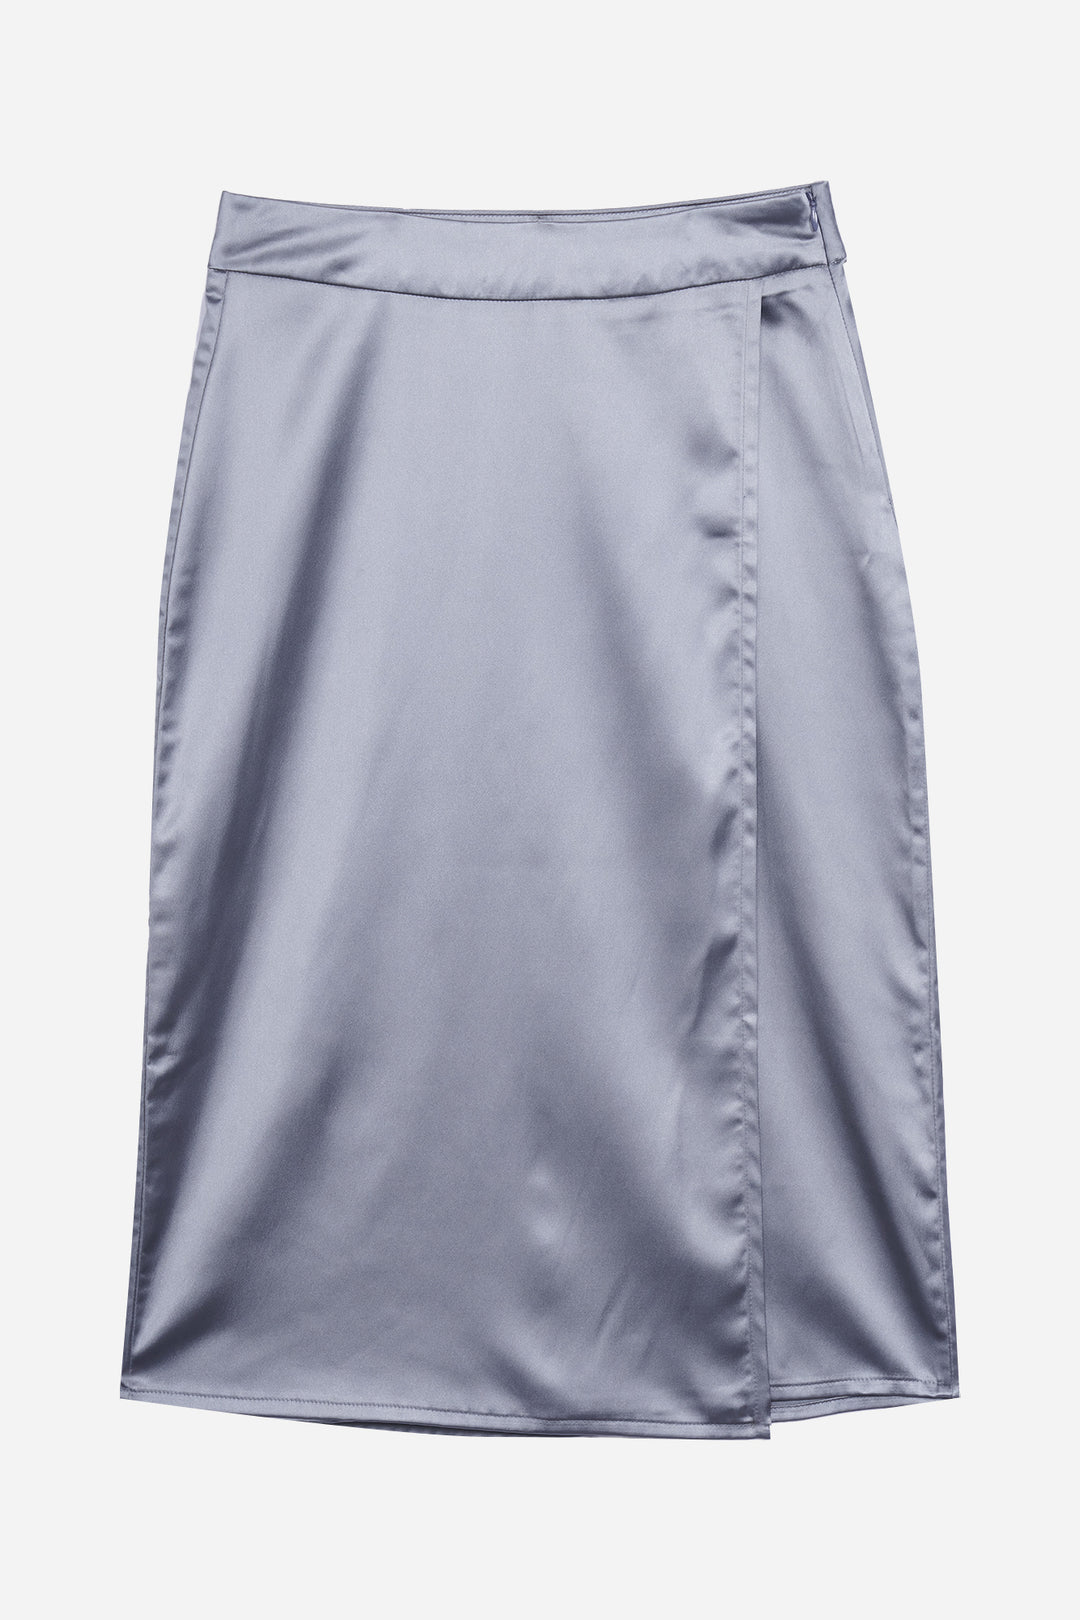 Overlap Satin Skirt